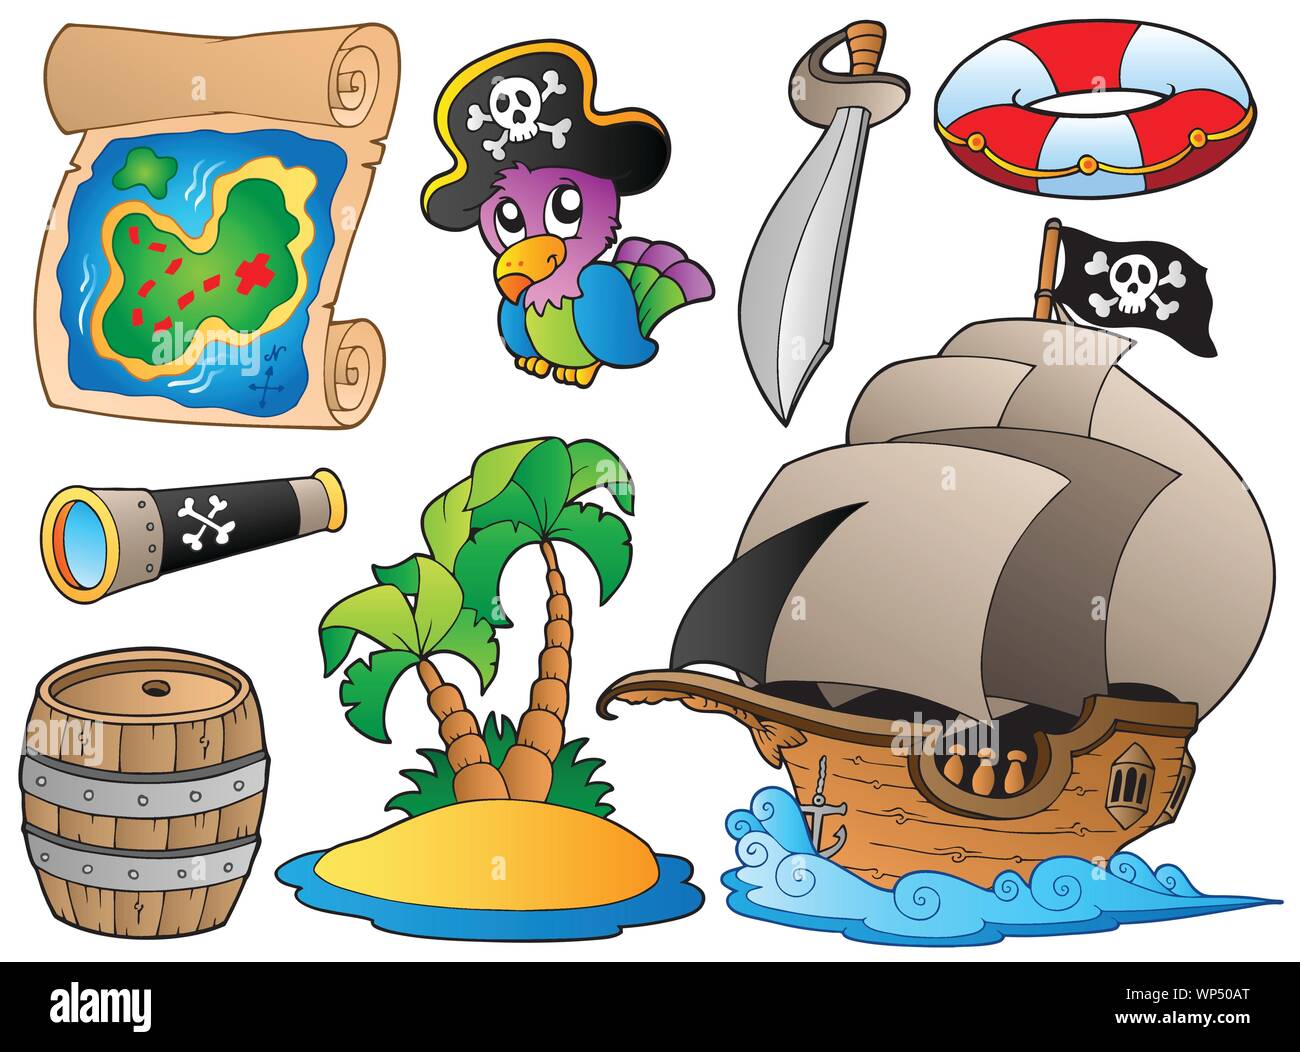 Пиратская ж. Предметы пиратской тематики. Пиратская тема. Пиратский остров корабль для детей. Печать пирата.